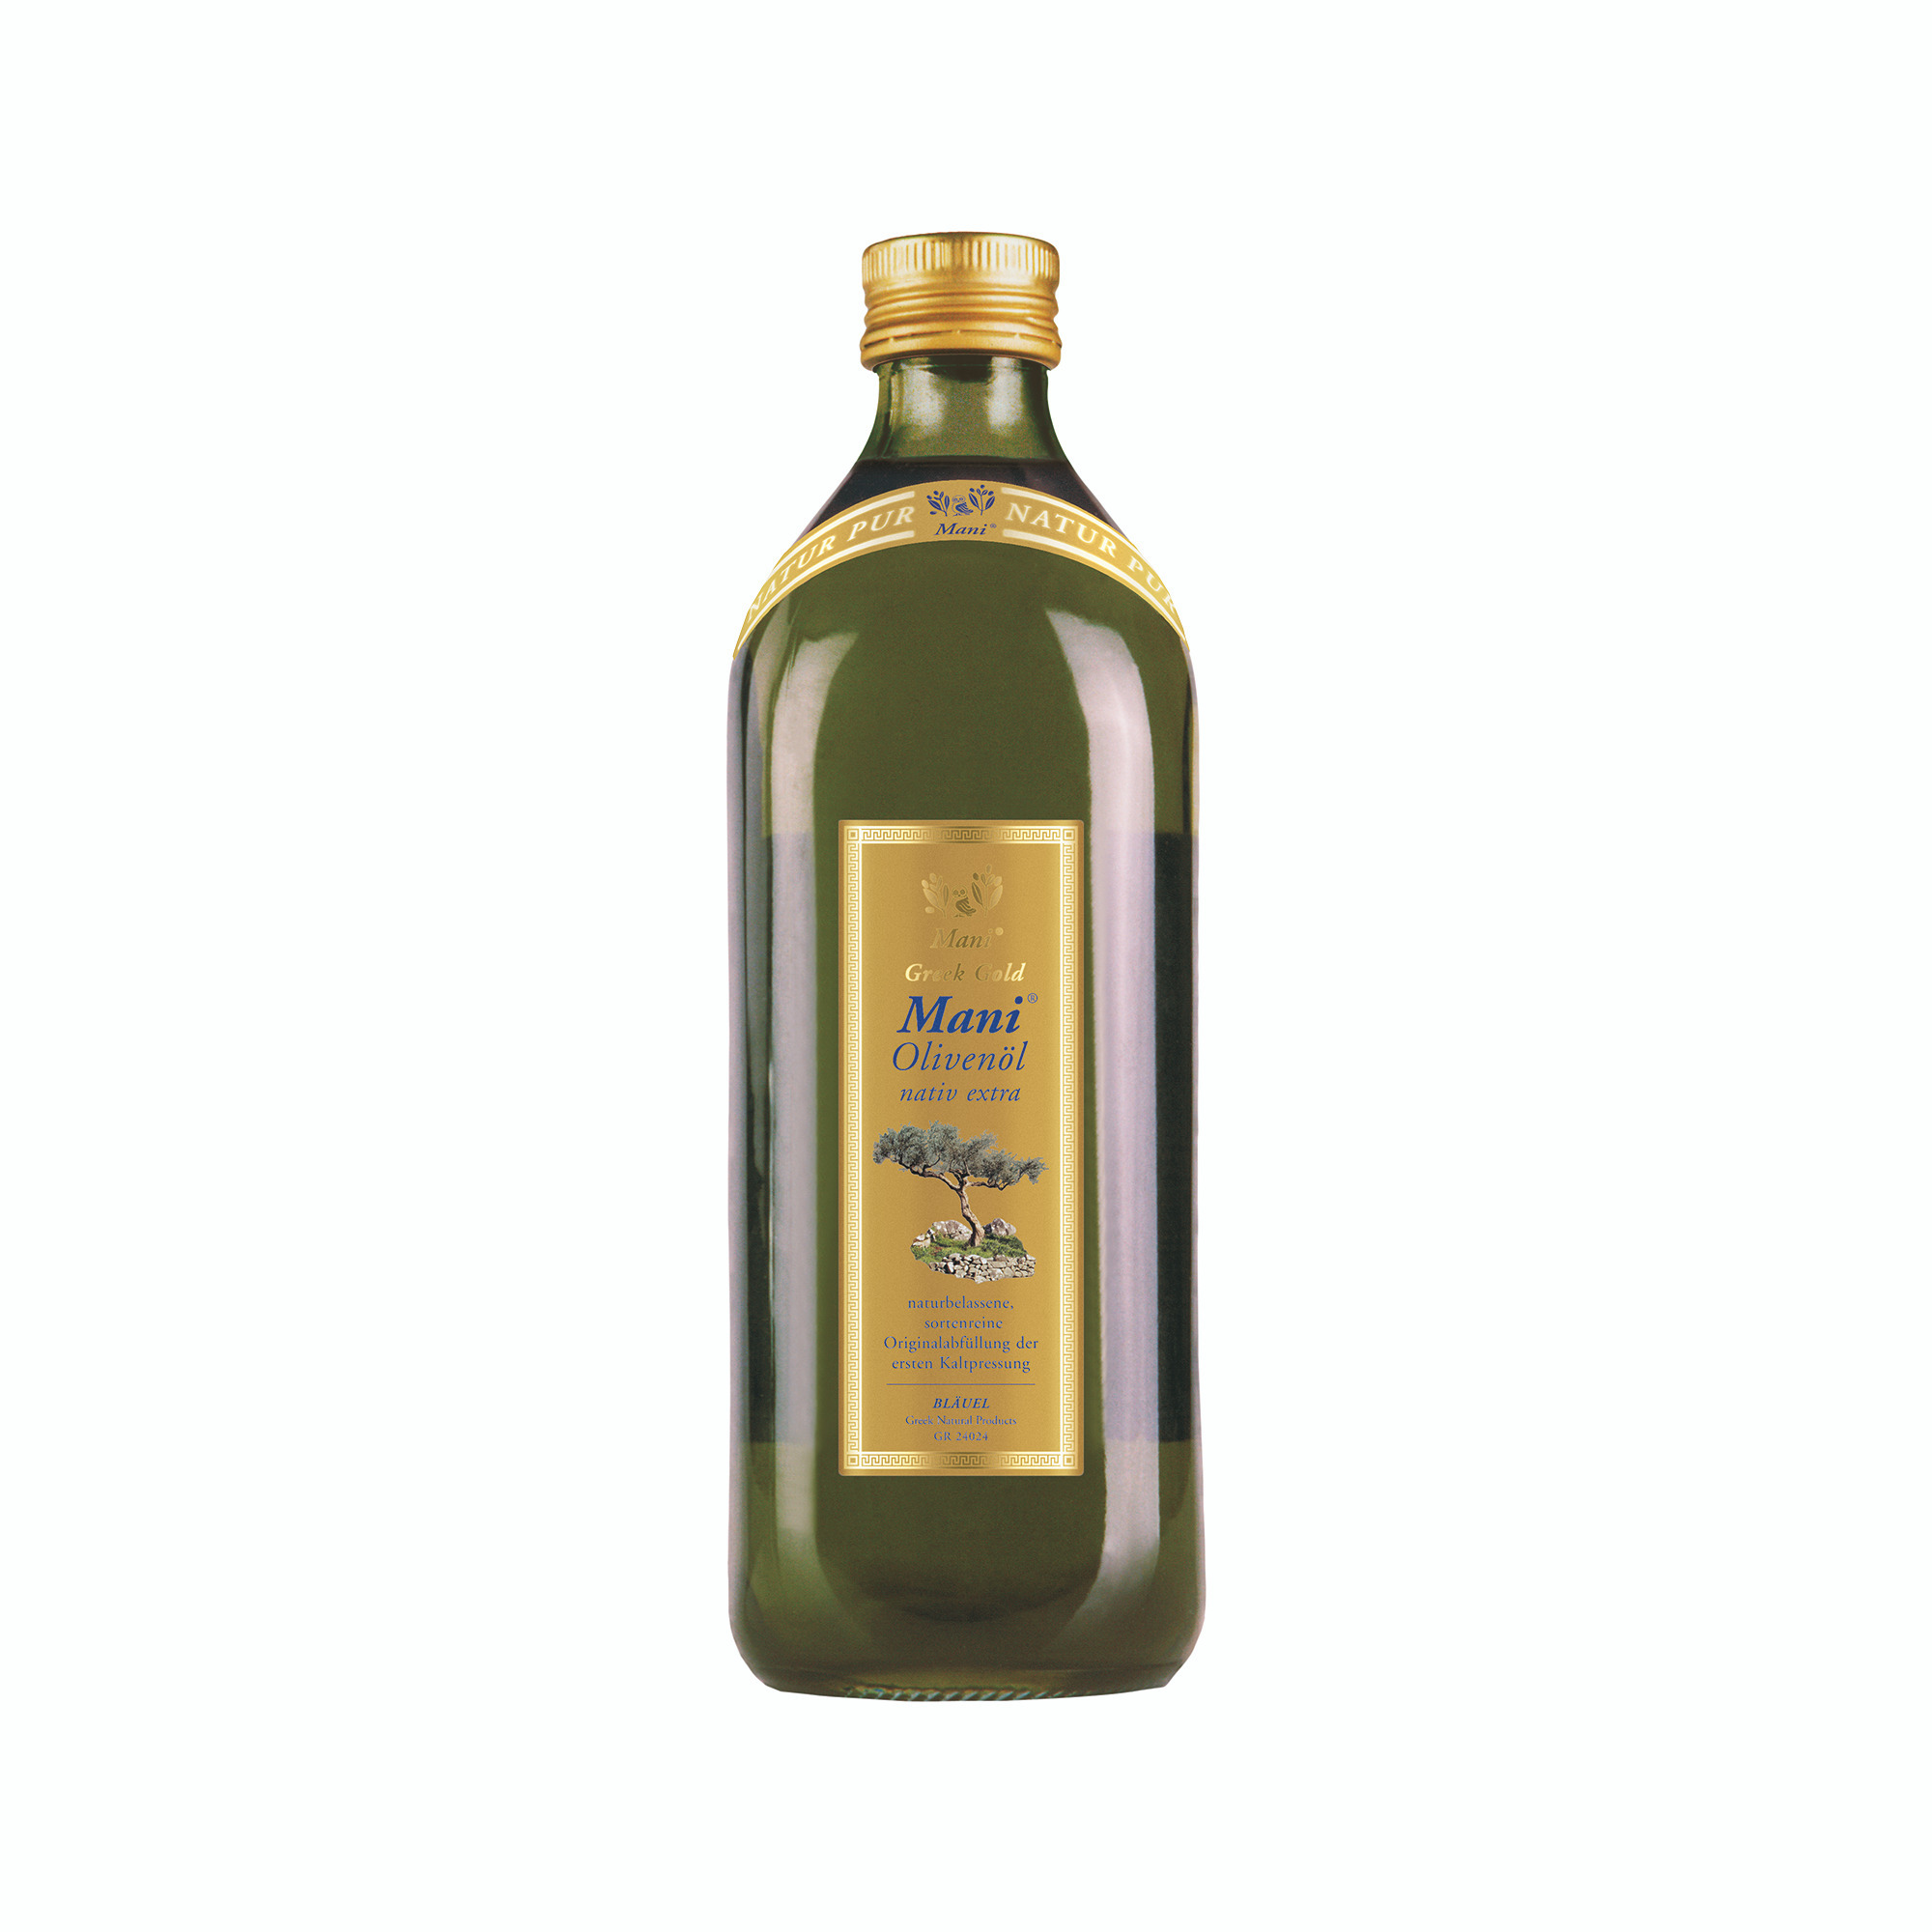 Mani olivový olej extra virgin 1l